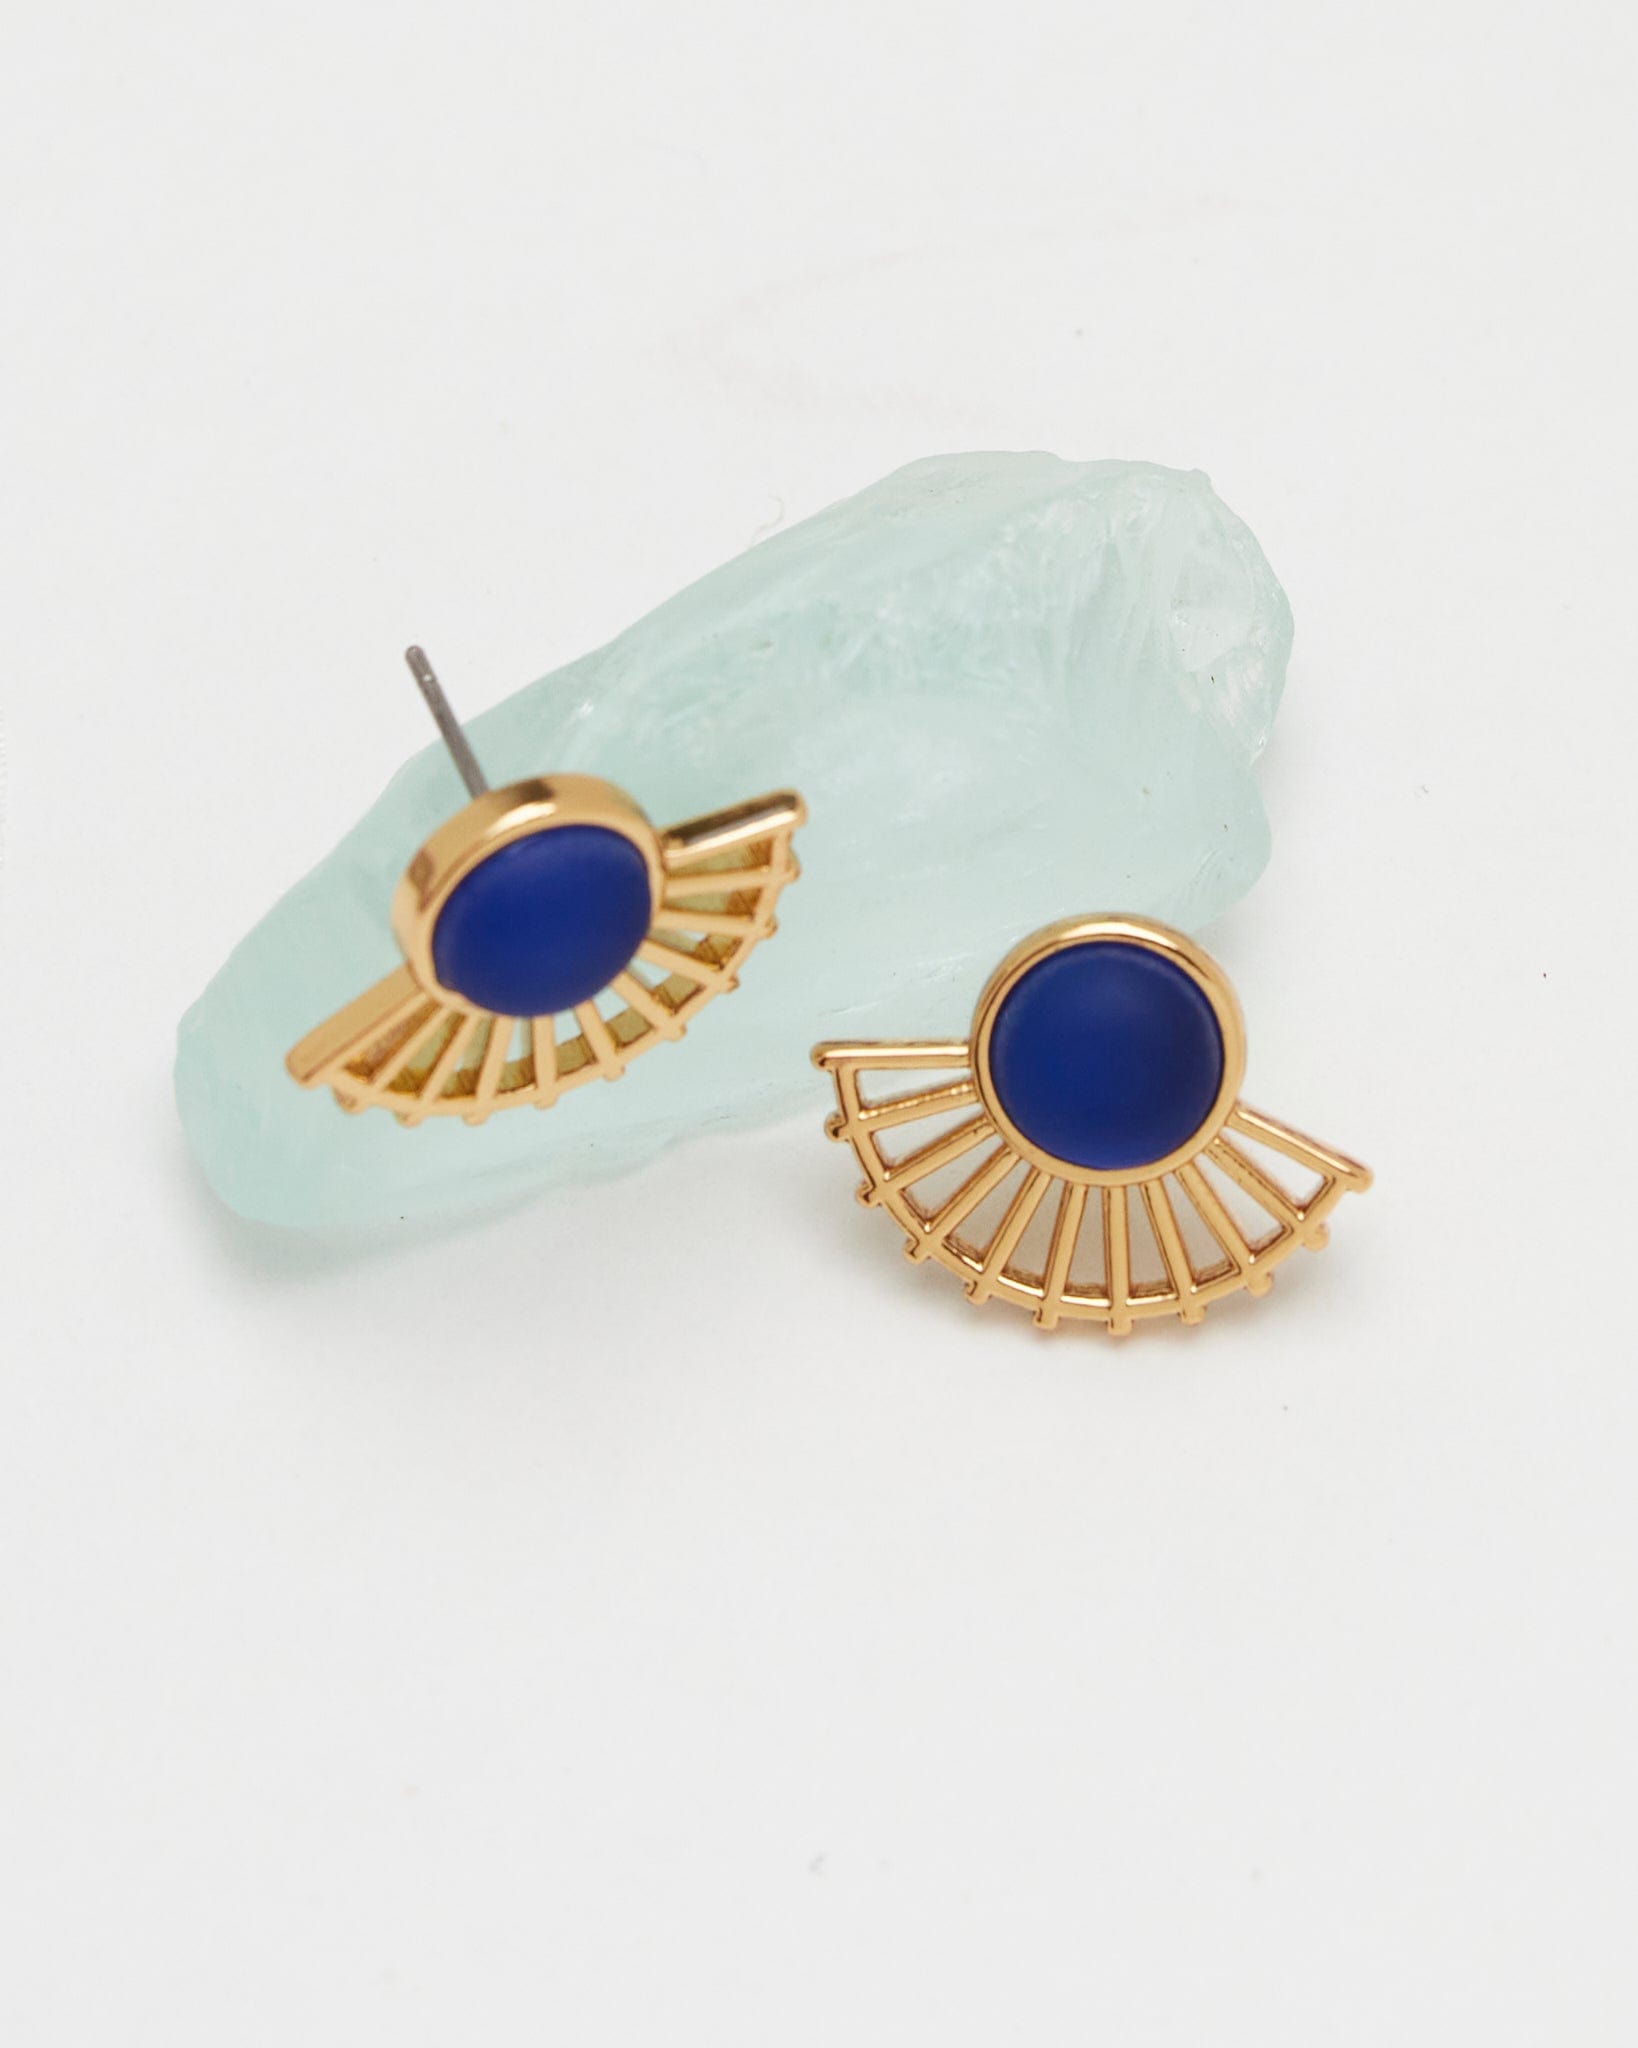 Gold fan earrings with blue gem in middle